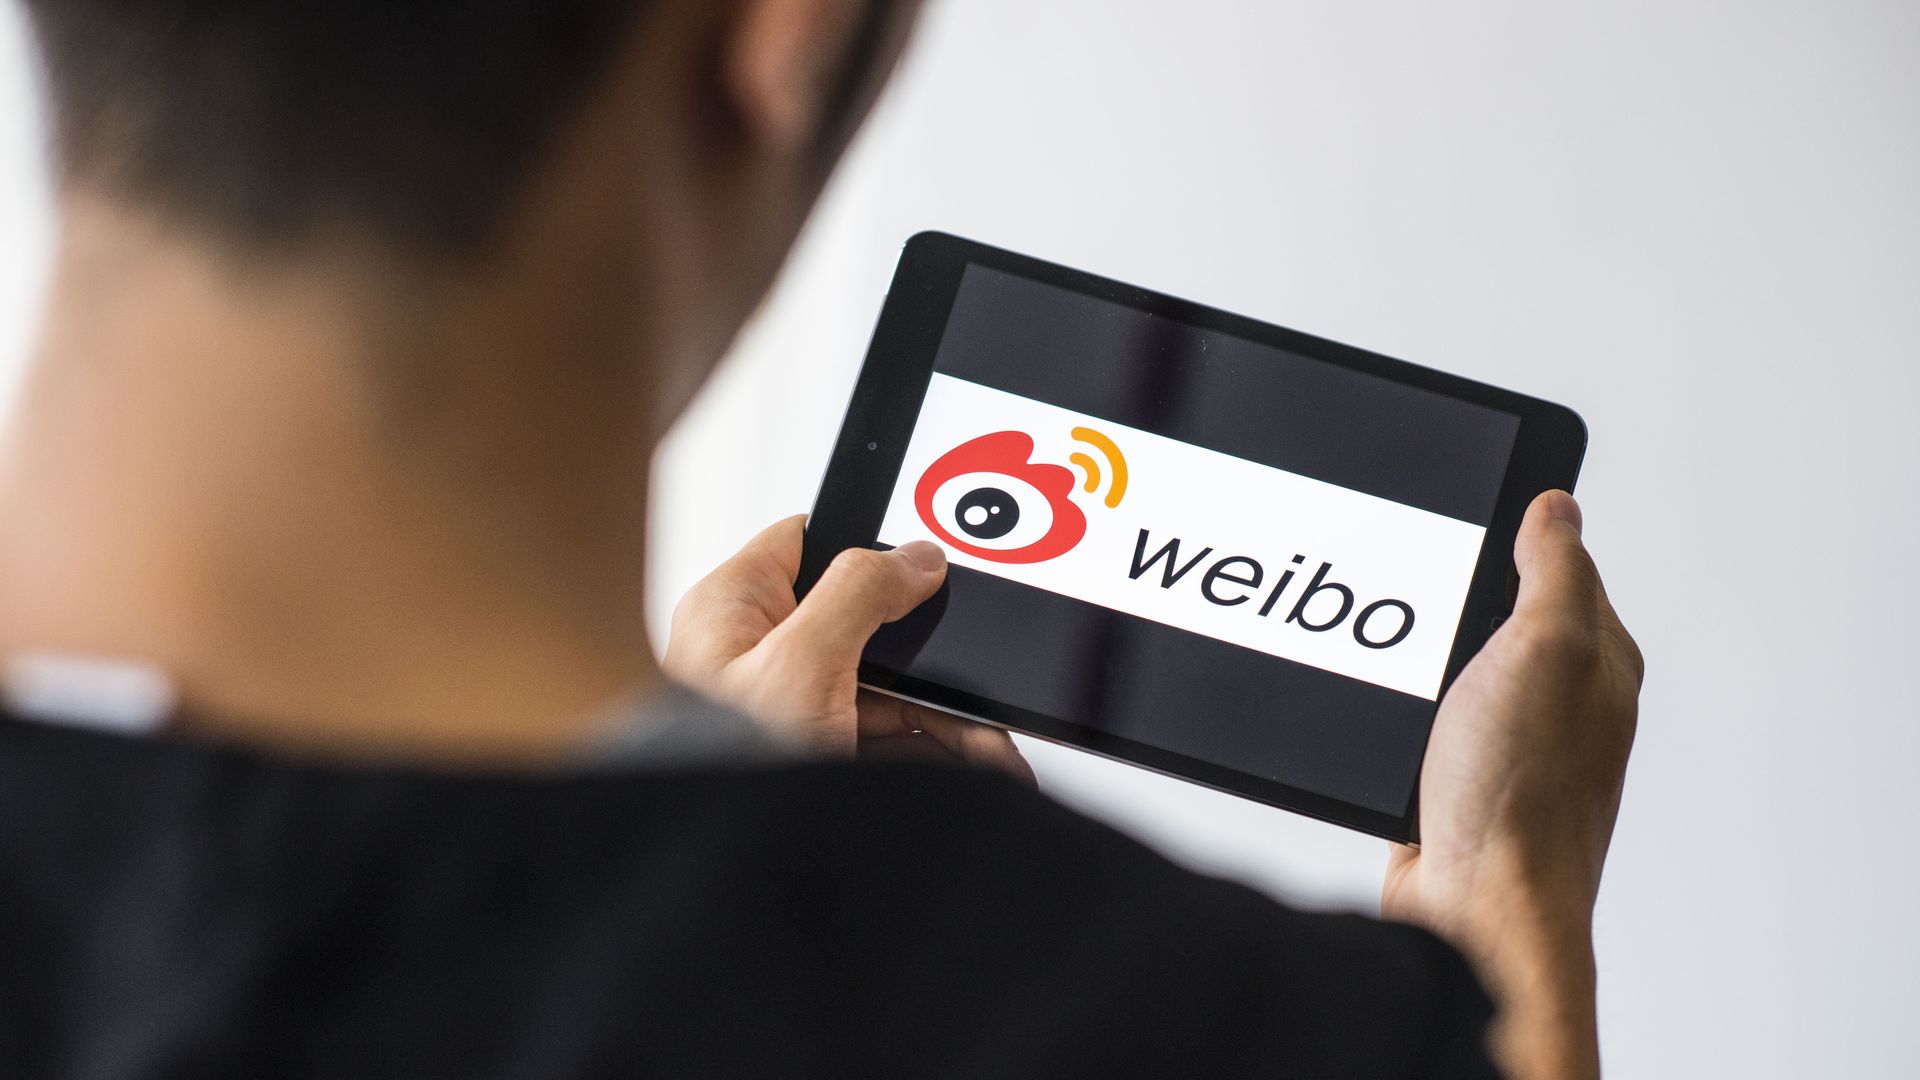 Weibo on an iPad